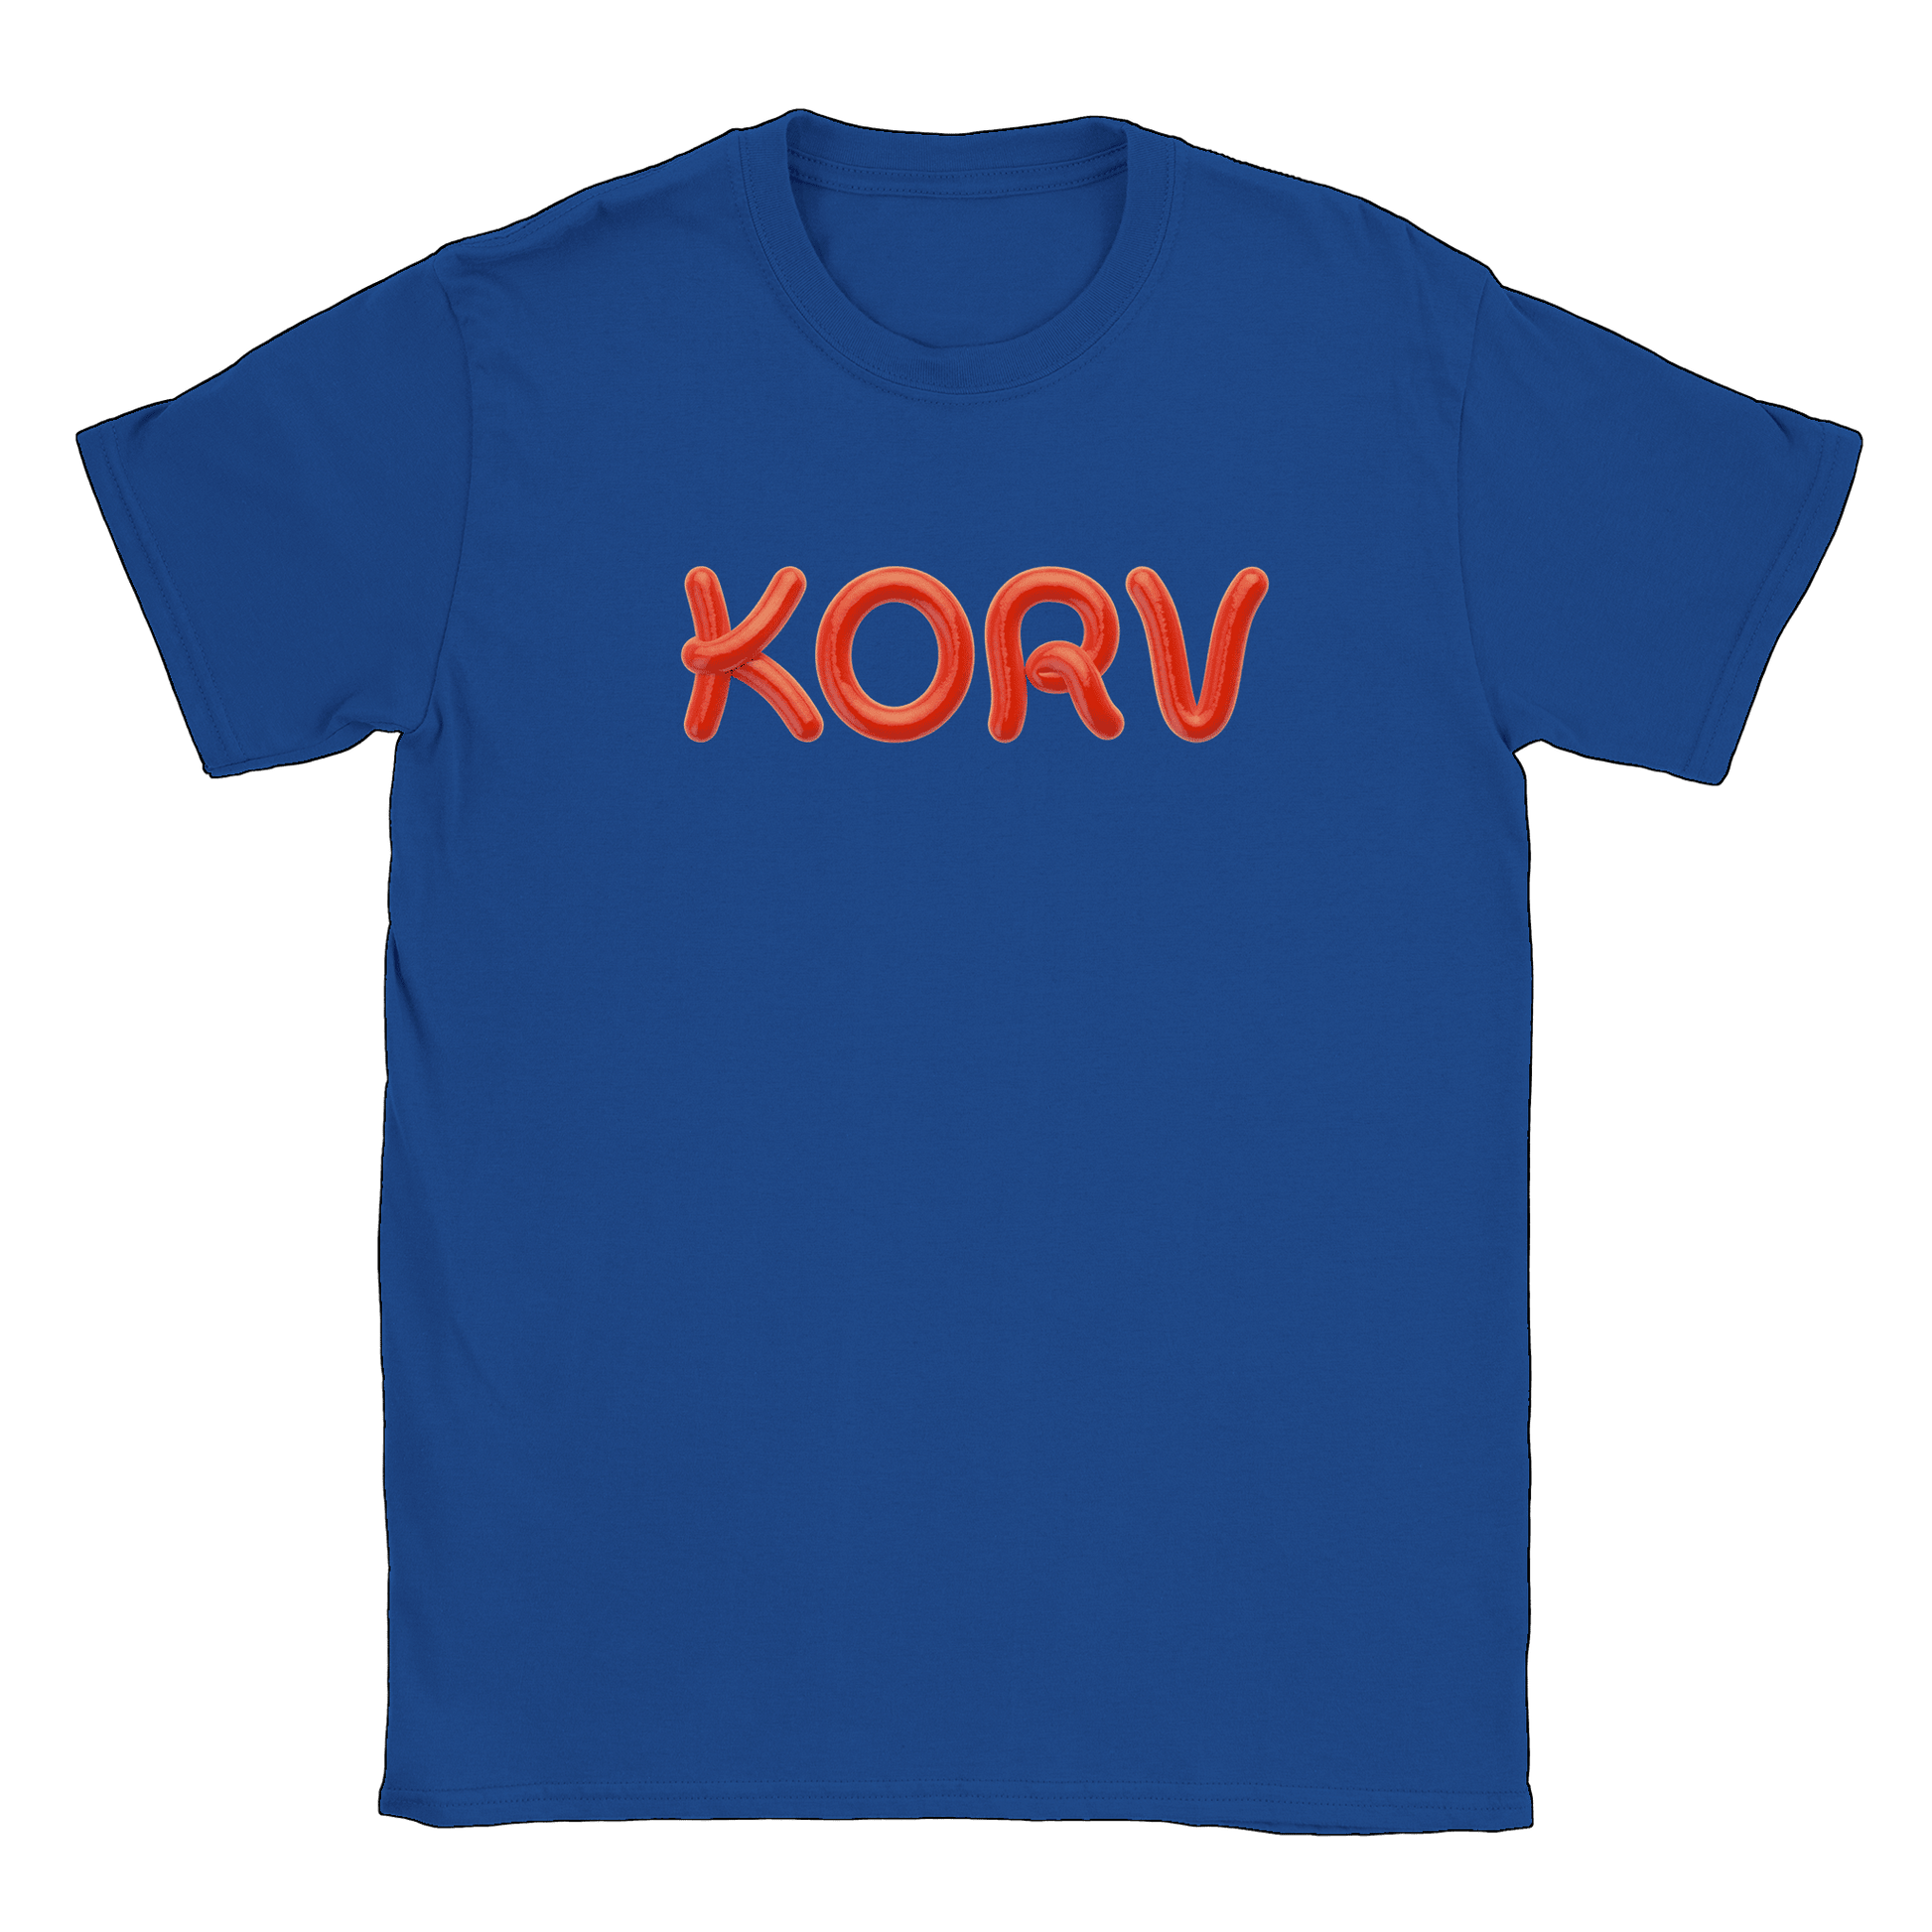 Korv - T-shirt Royal